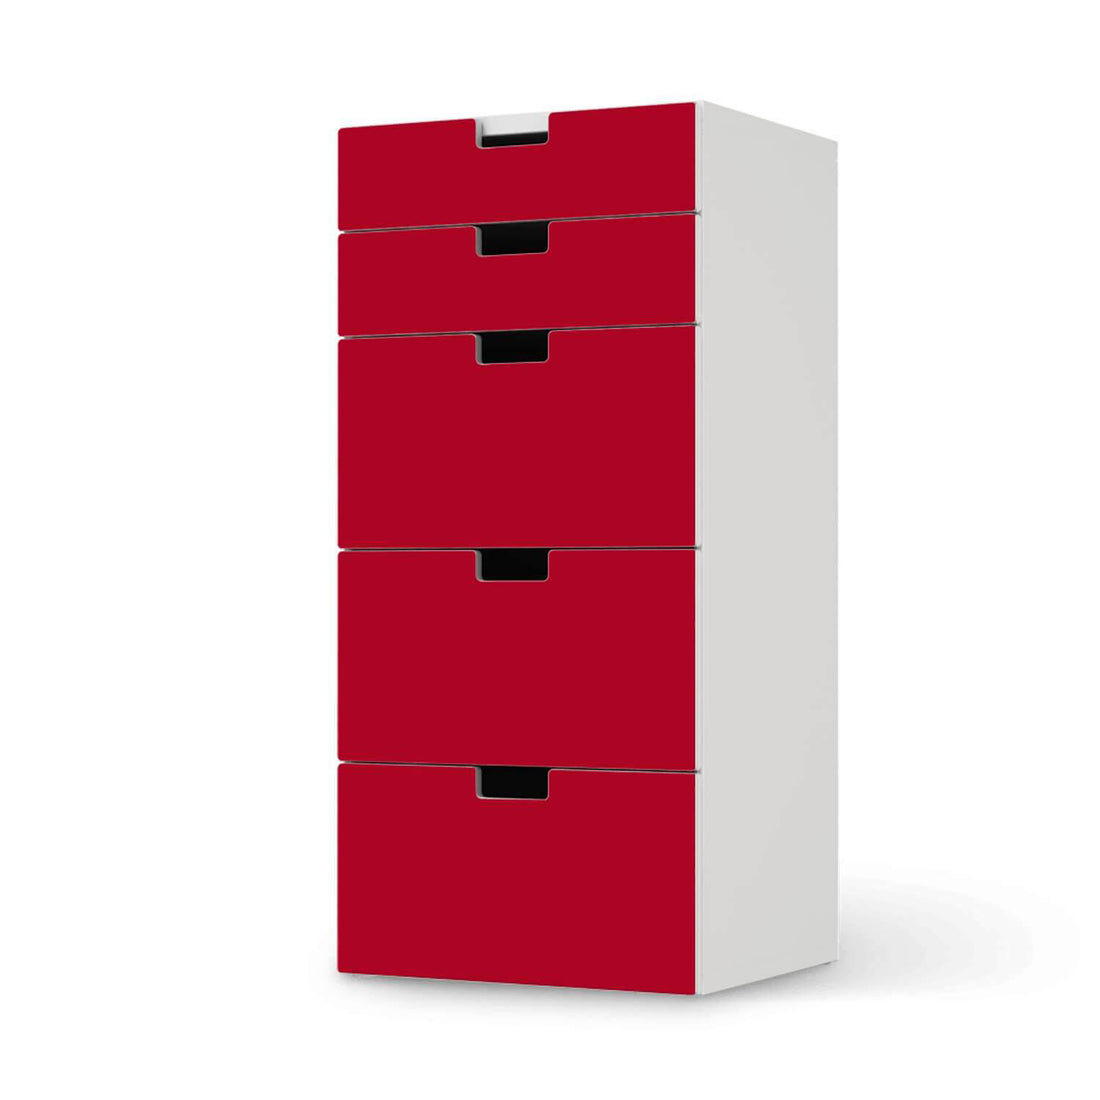 Möbel Klebefolie Rot Dark - IKEA Stuva Kommode - 5 Schubladen  - weiss